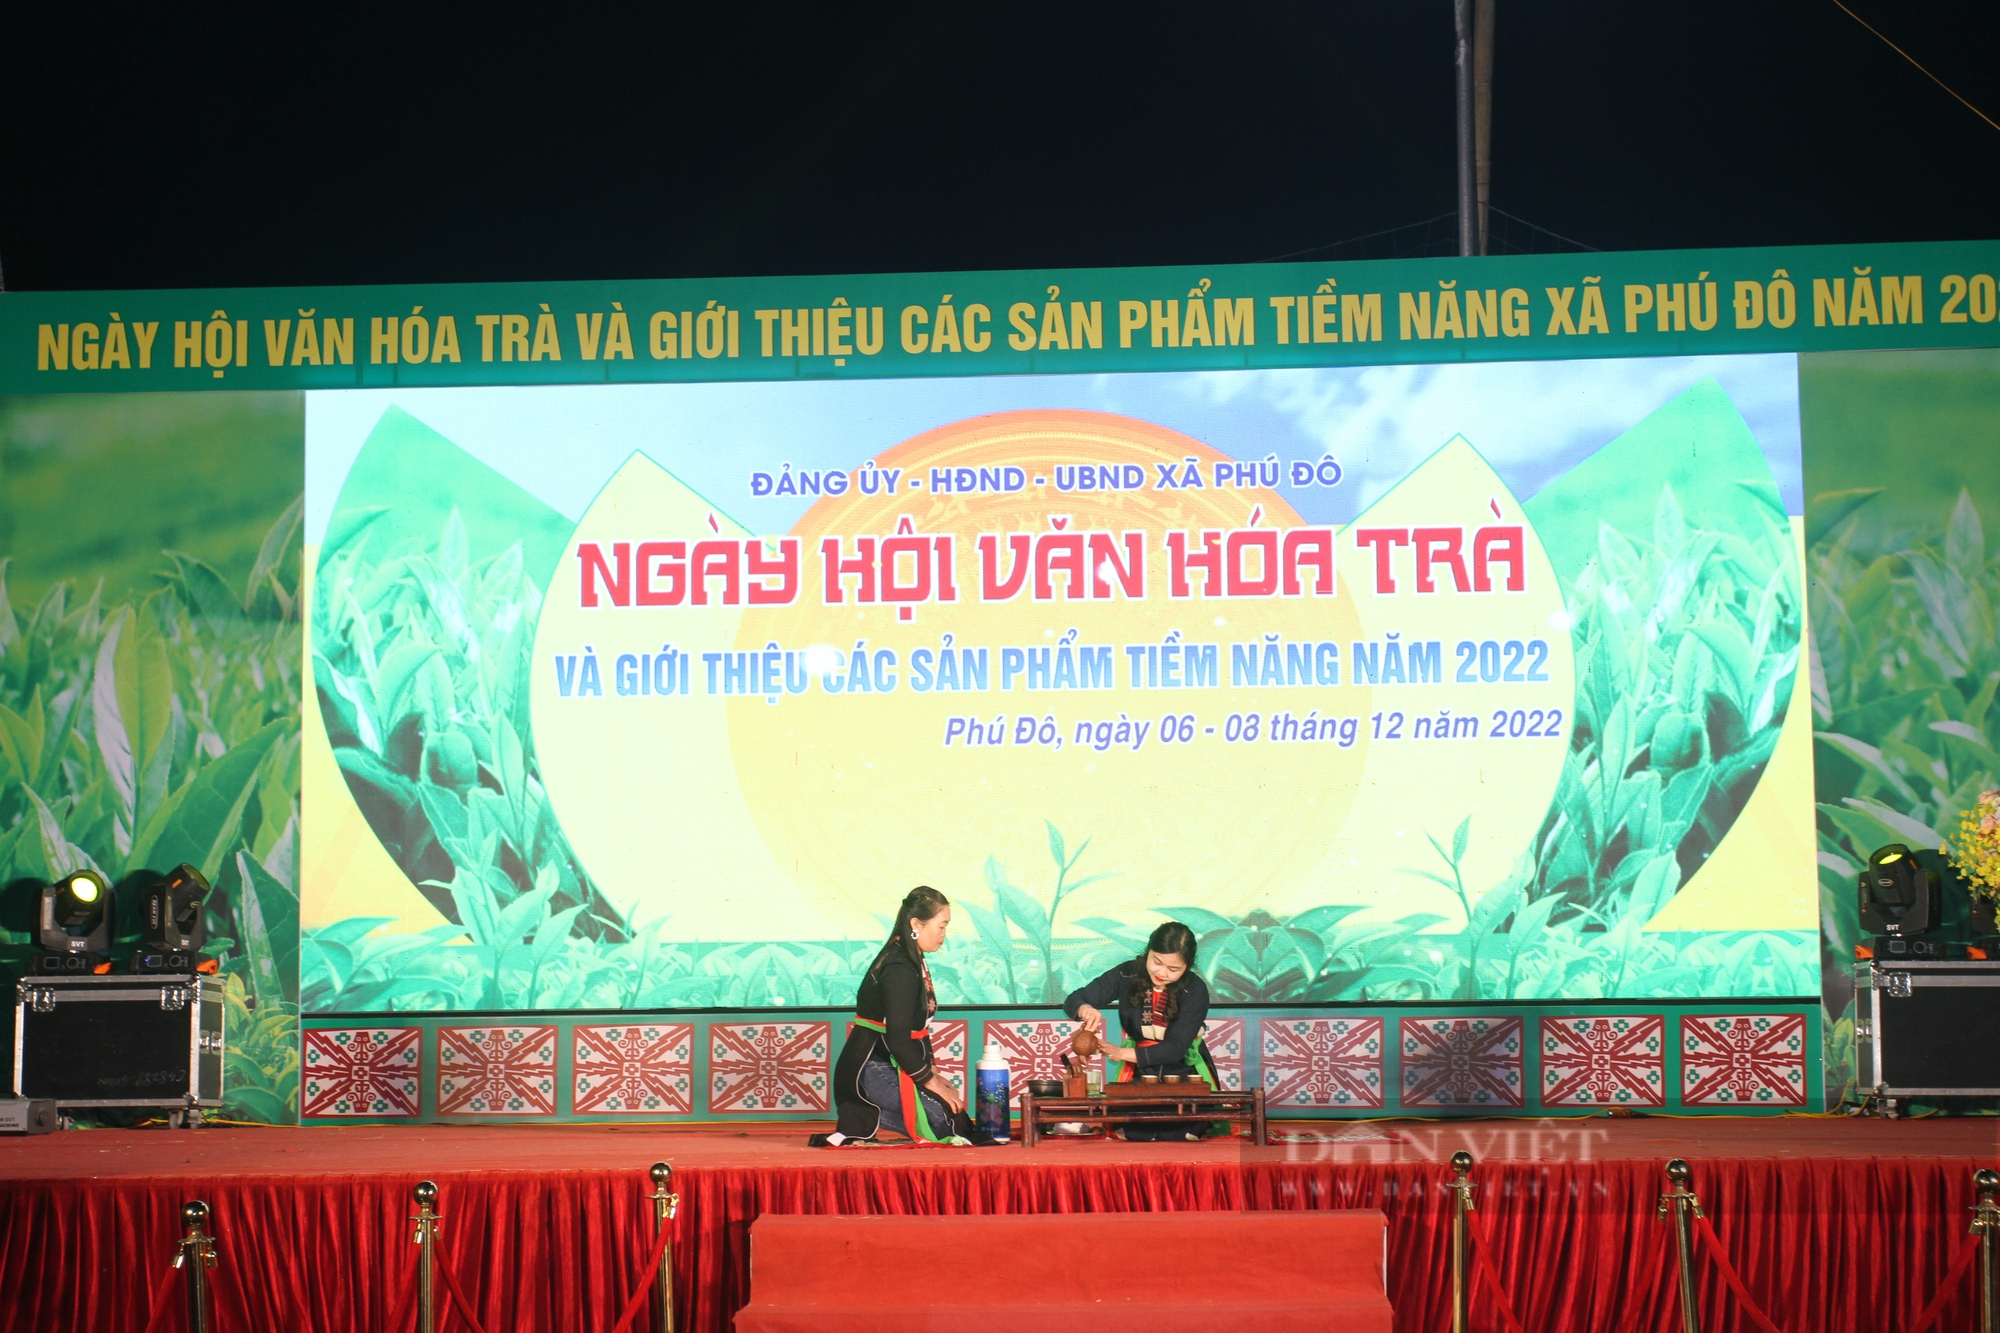 Thái Nguyên: Tưng bừng ngày Hội văn hóa trà và giới thiệu các sản phẩm tiềm năng thế mạnh năm 2022 - Ảnh 3.